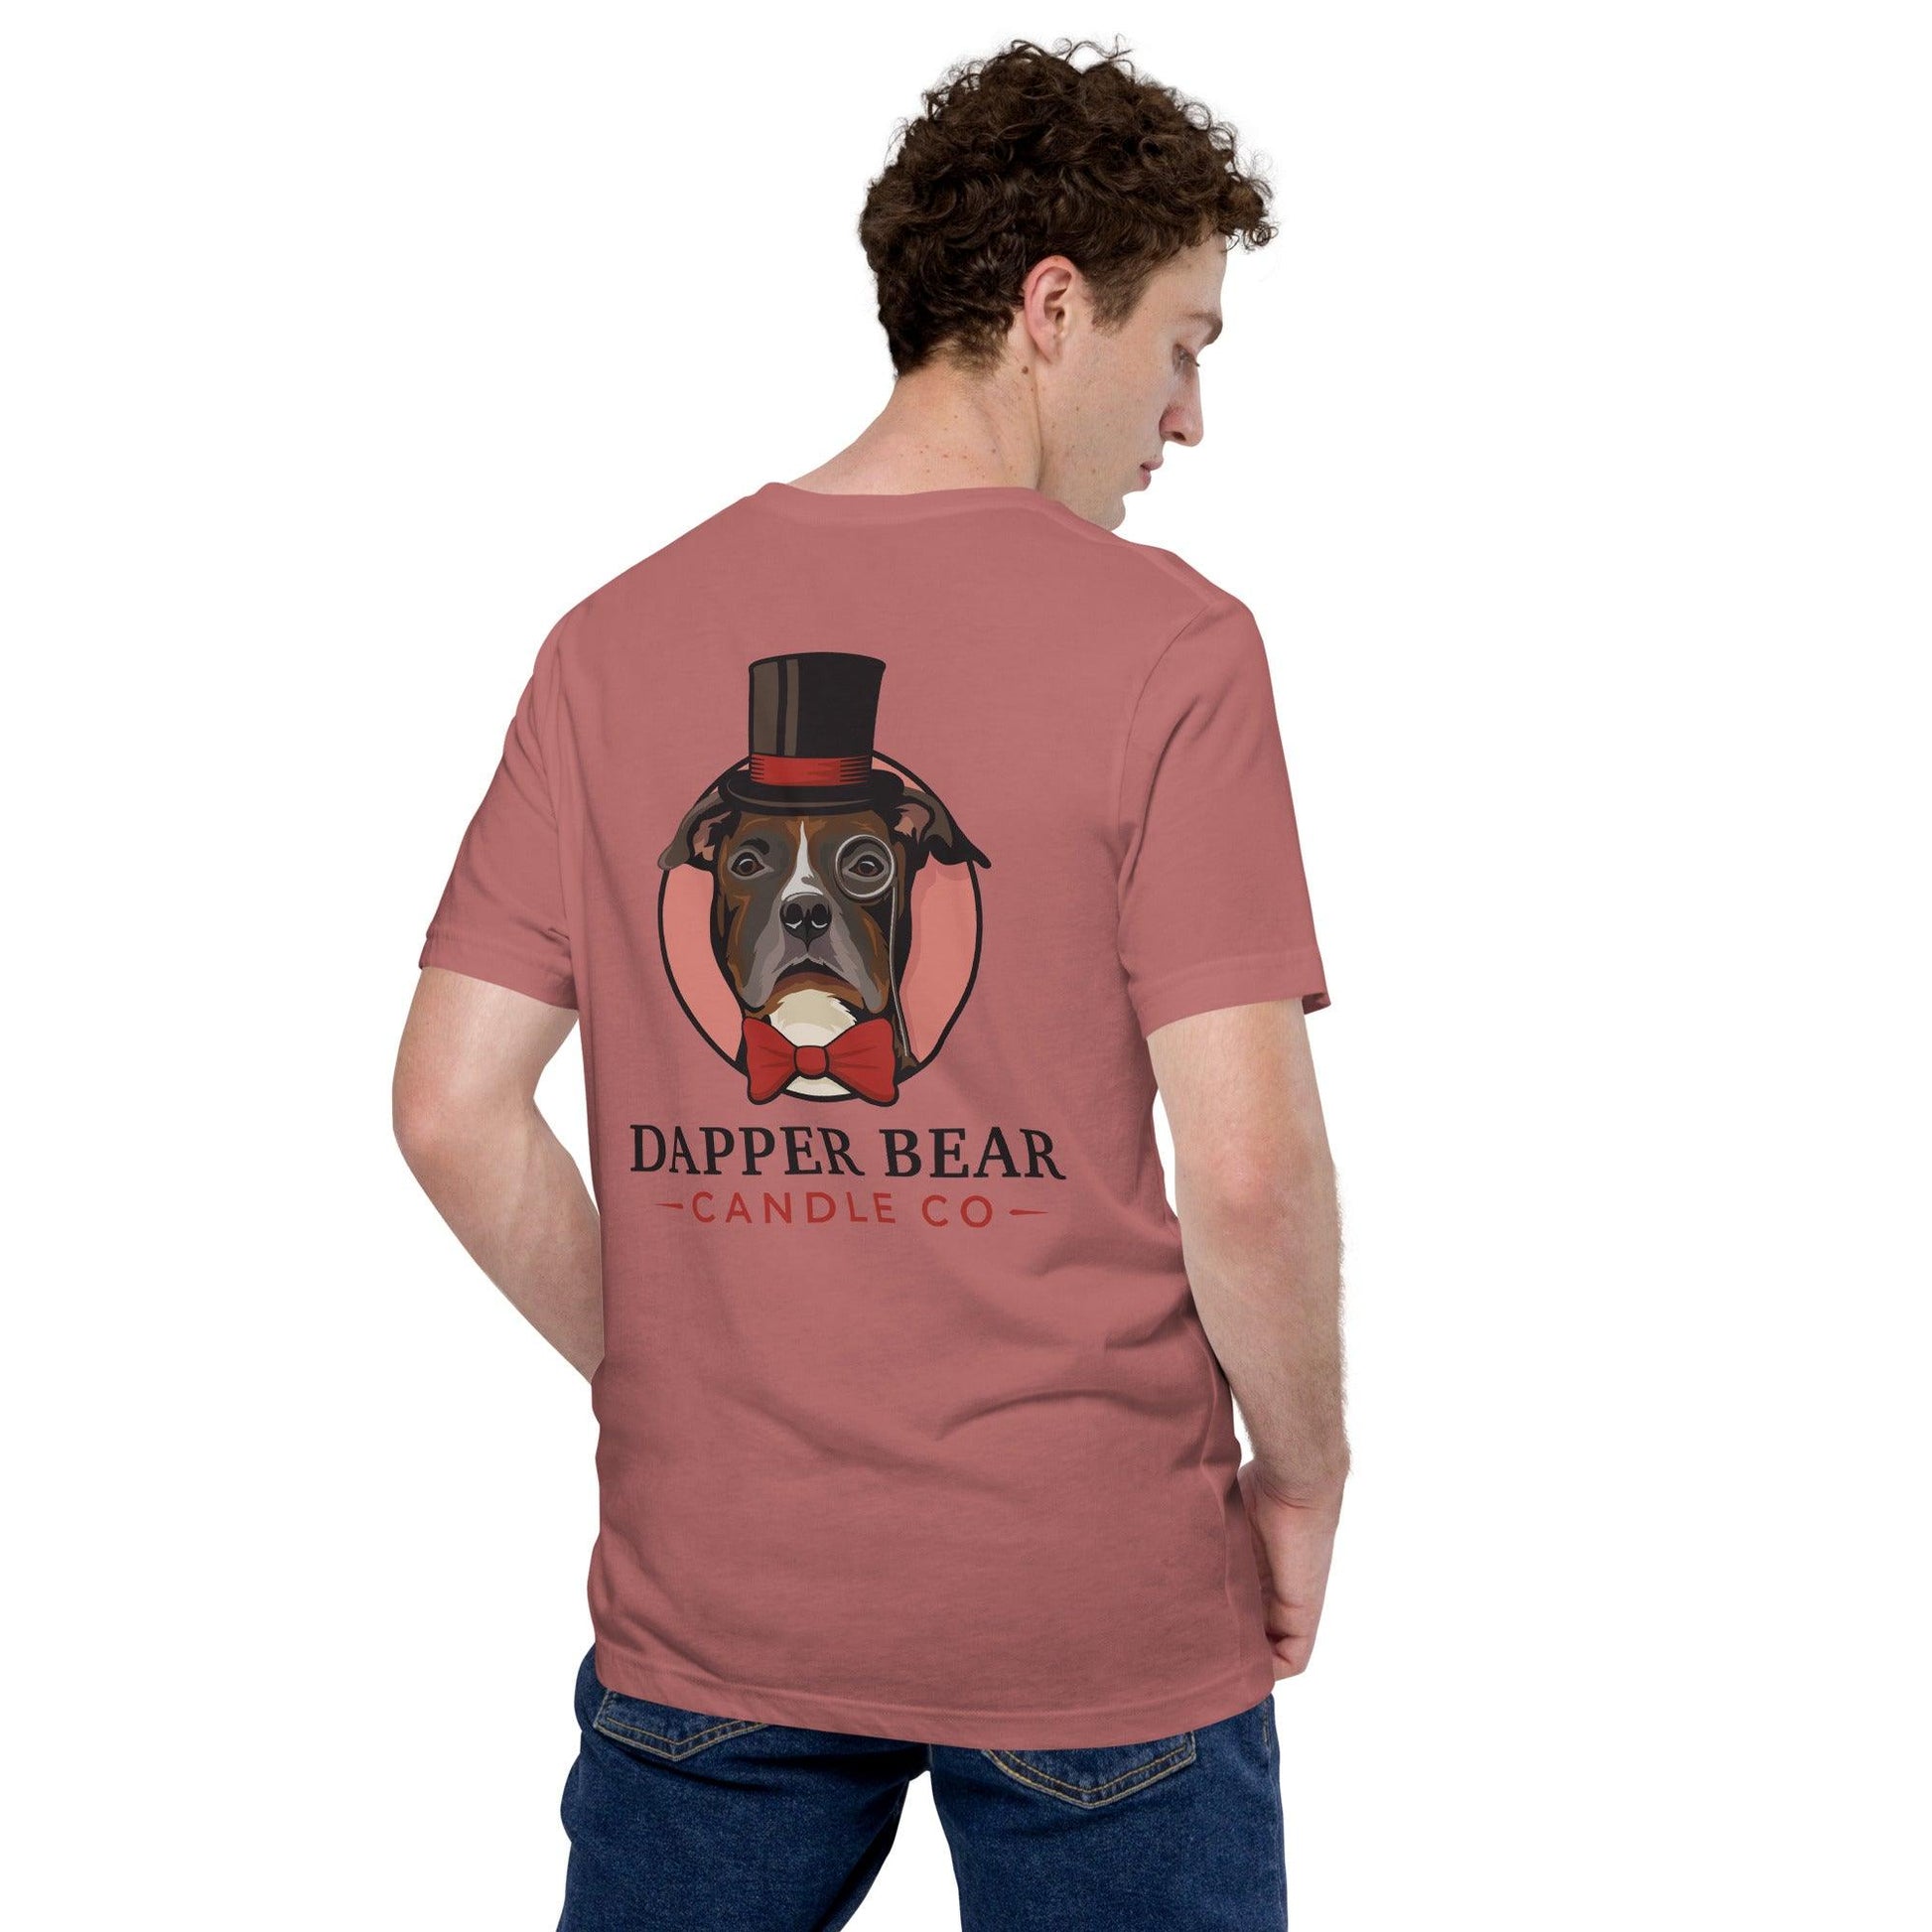 Unisex t-shirt - Dapper Bear Candle Co.